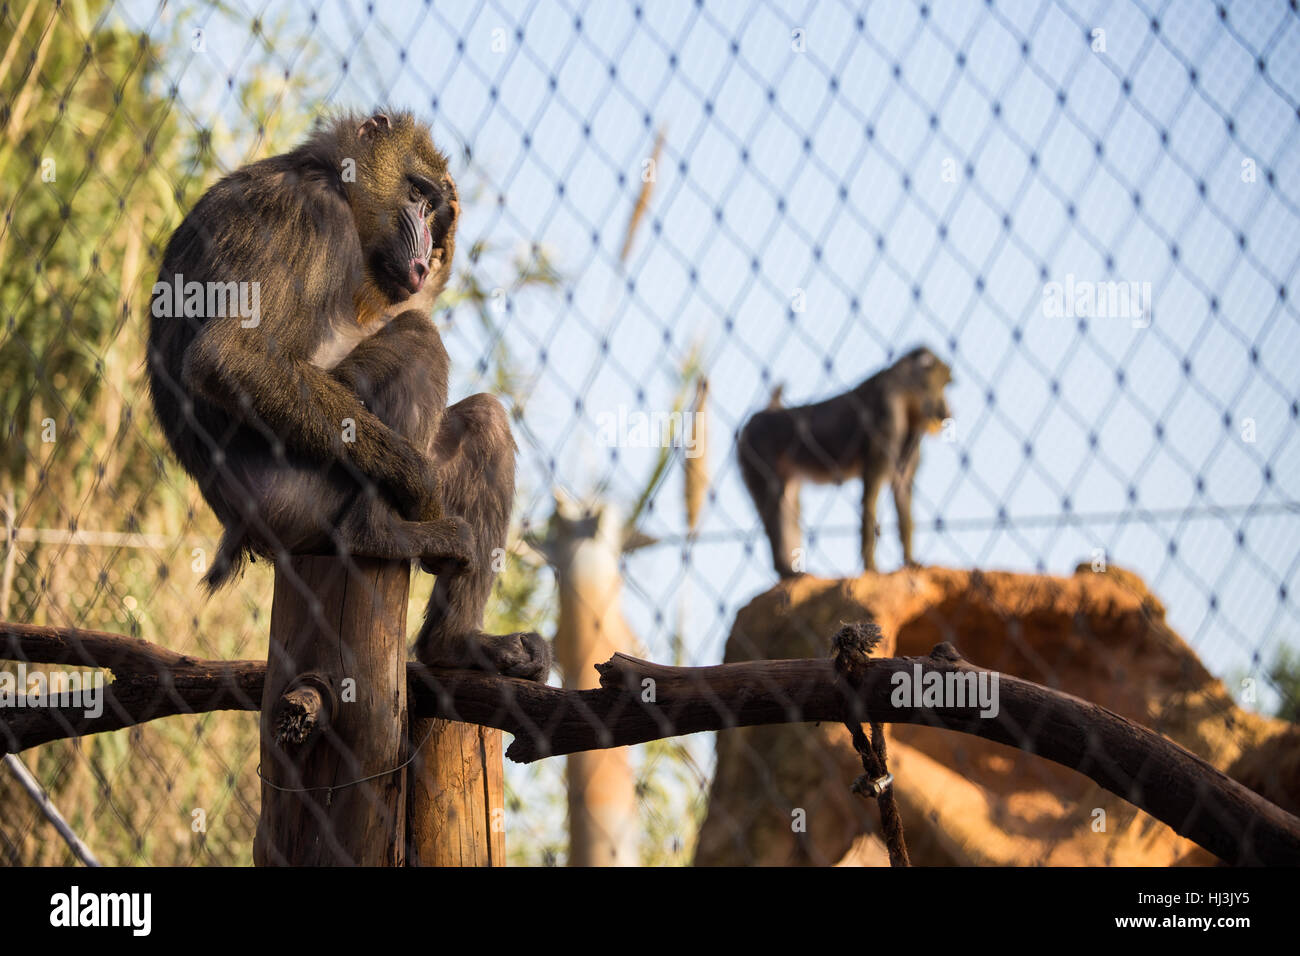 Mandriles hembra sentado en una jaula el roce de su cabeza, en el Zoológico de Rabat, Marruecos Foto de stock